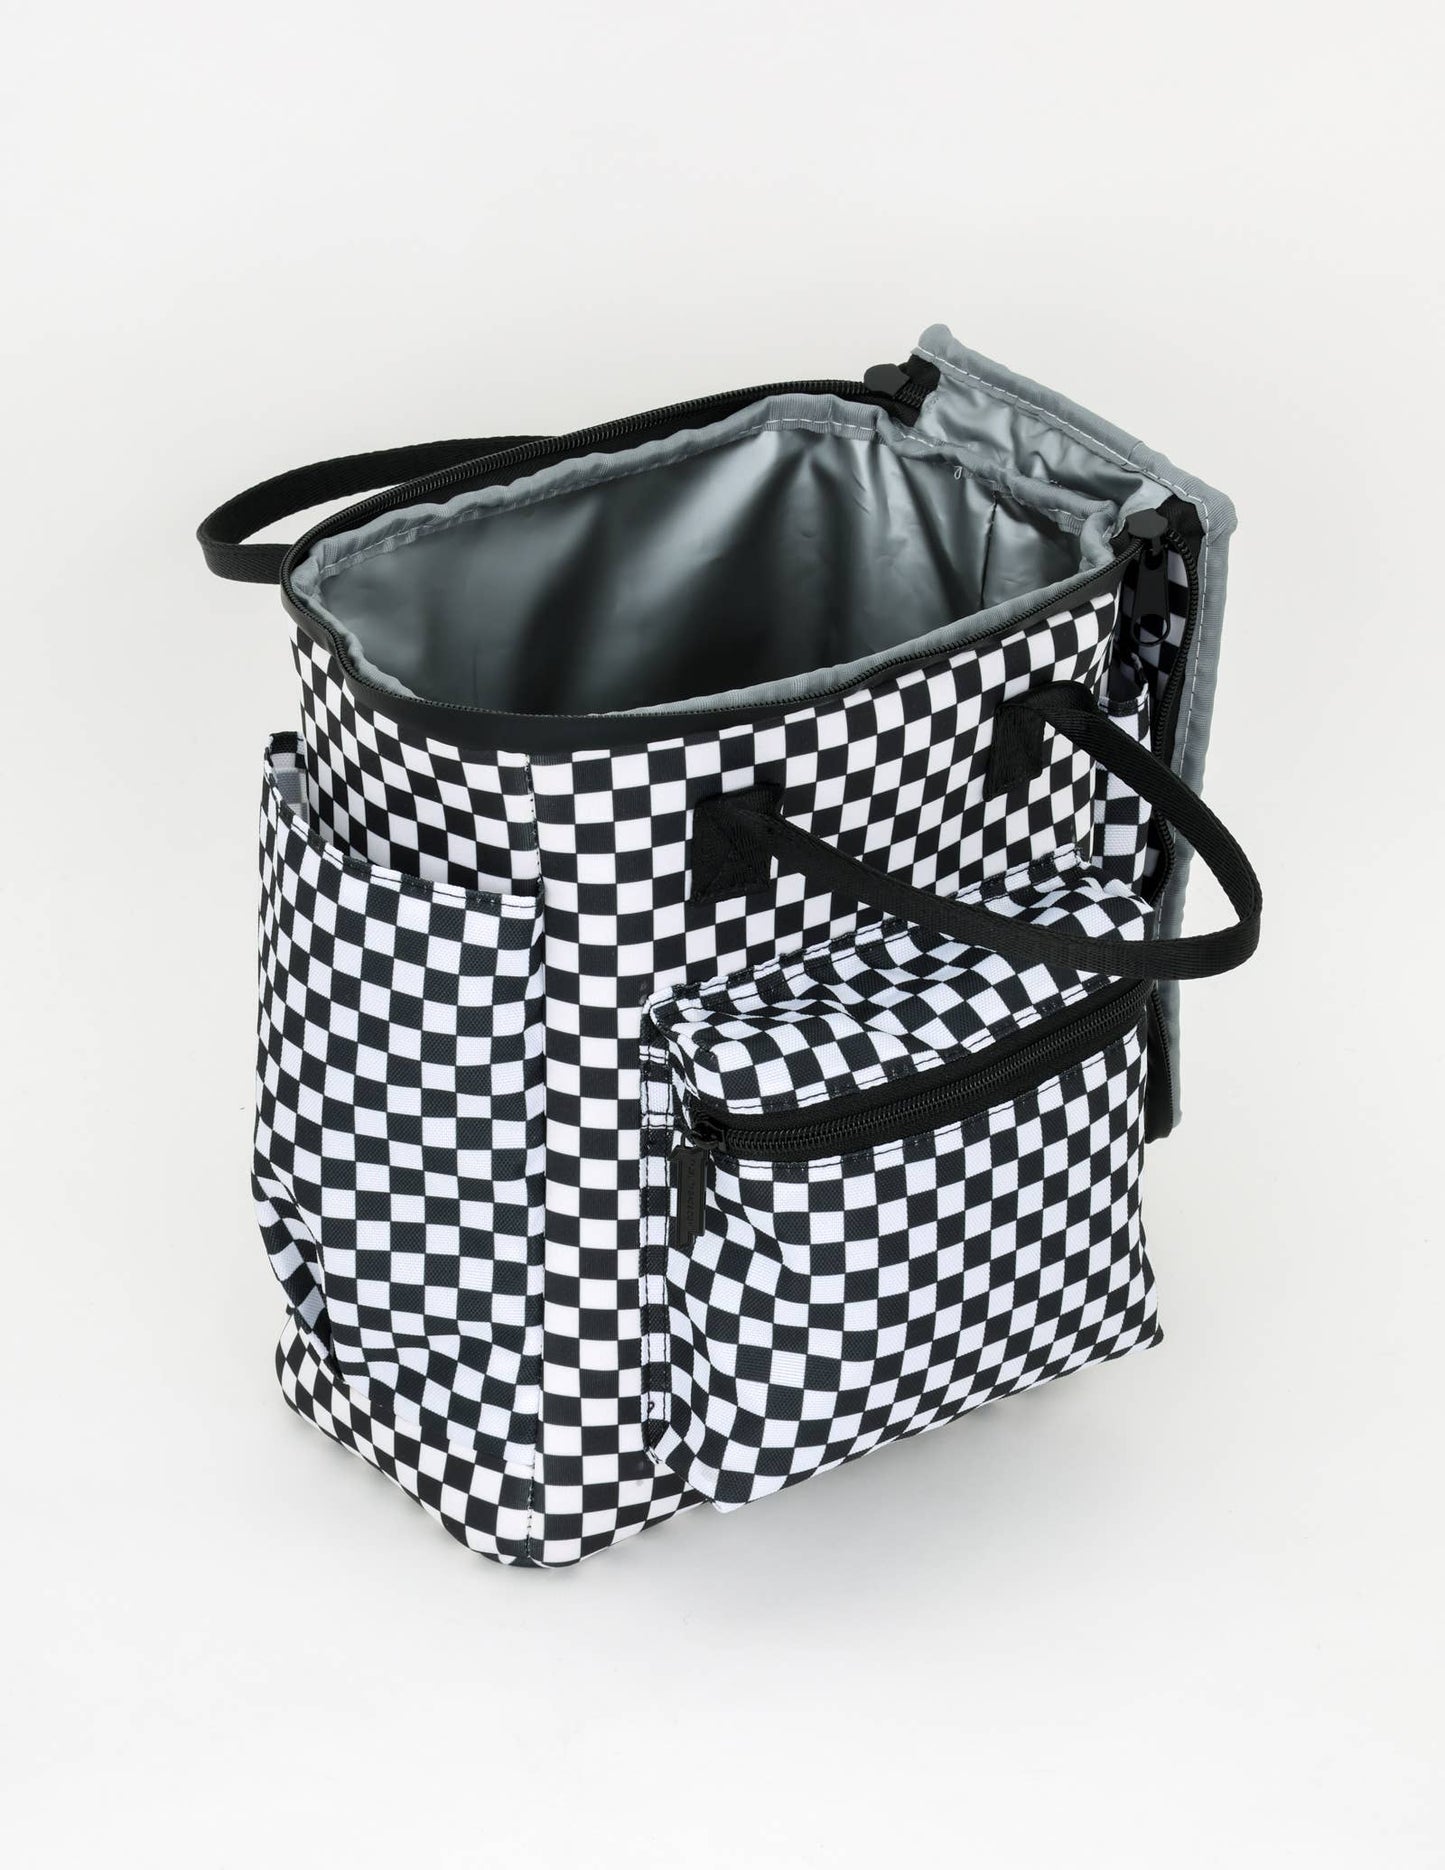 Indy - Rackpack StanCan 12Pak Fashion Cooler Bag